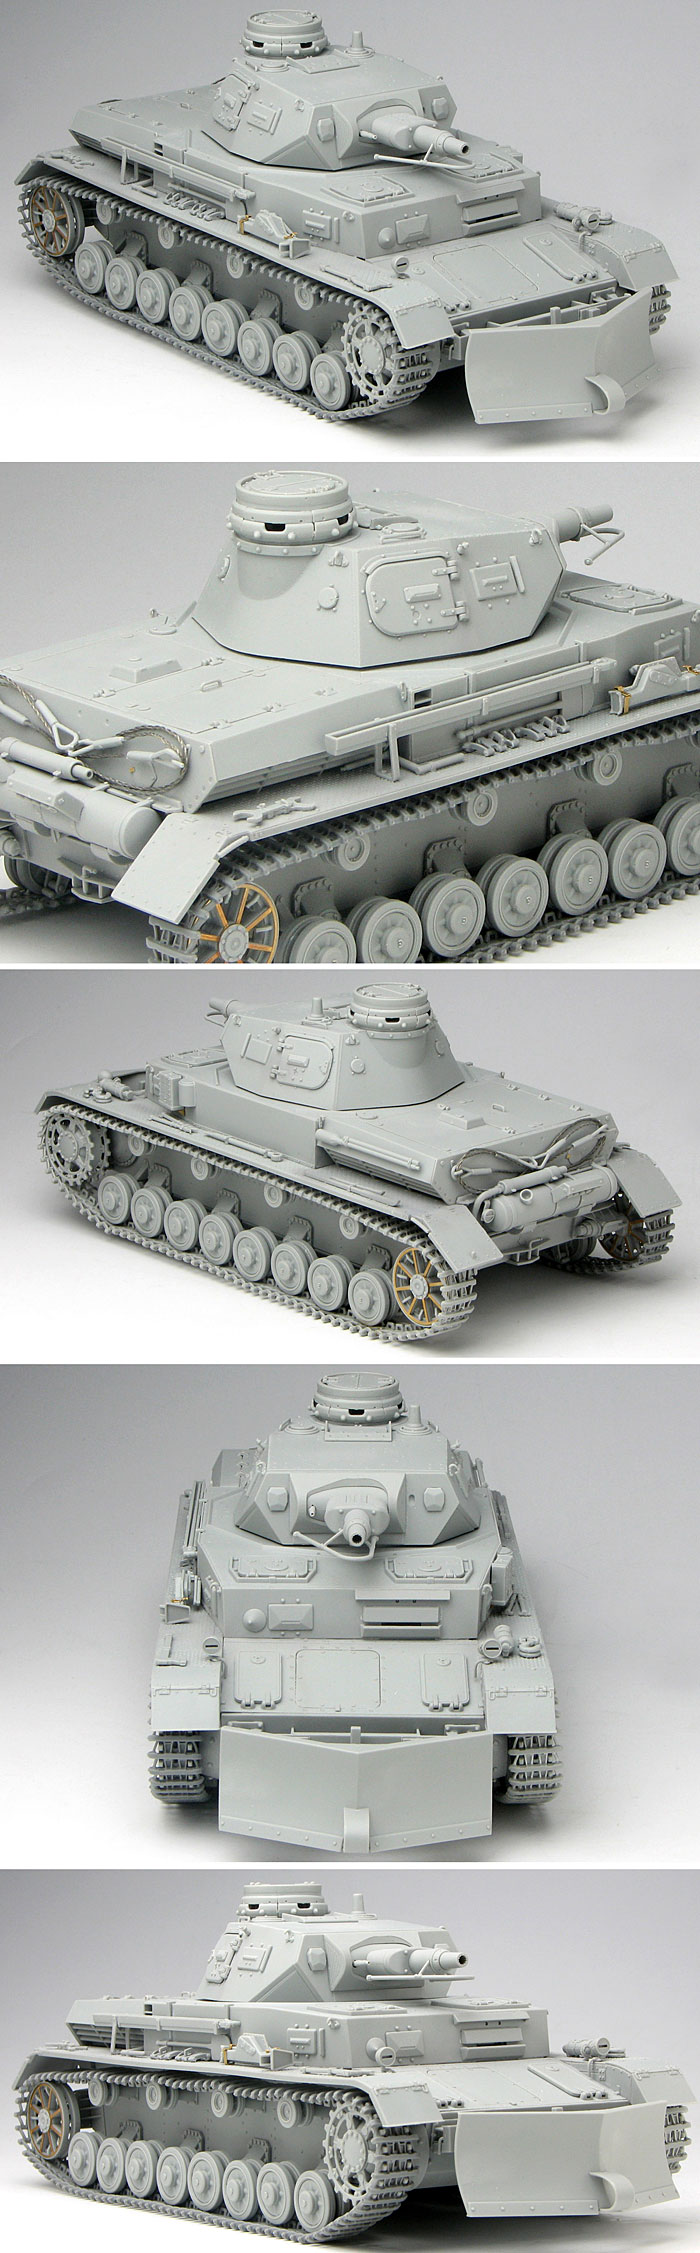 ドイツ軍 4号戦車B型 w/除雪ドーザ (Pz.Kpfw.4 Ausf.B) マジックトラック付き プラモデル (ドラゴン 1/35 39-45 Series No.6764) 商品画像_3